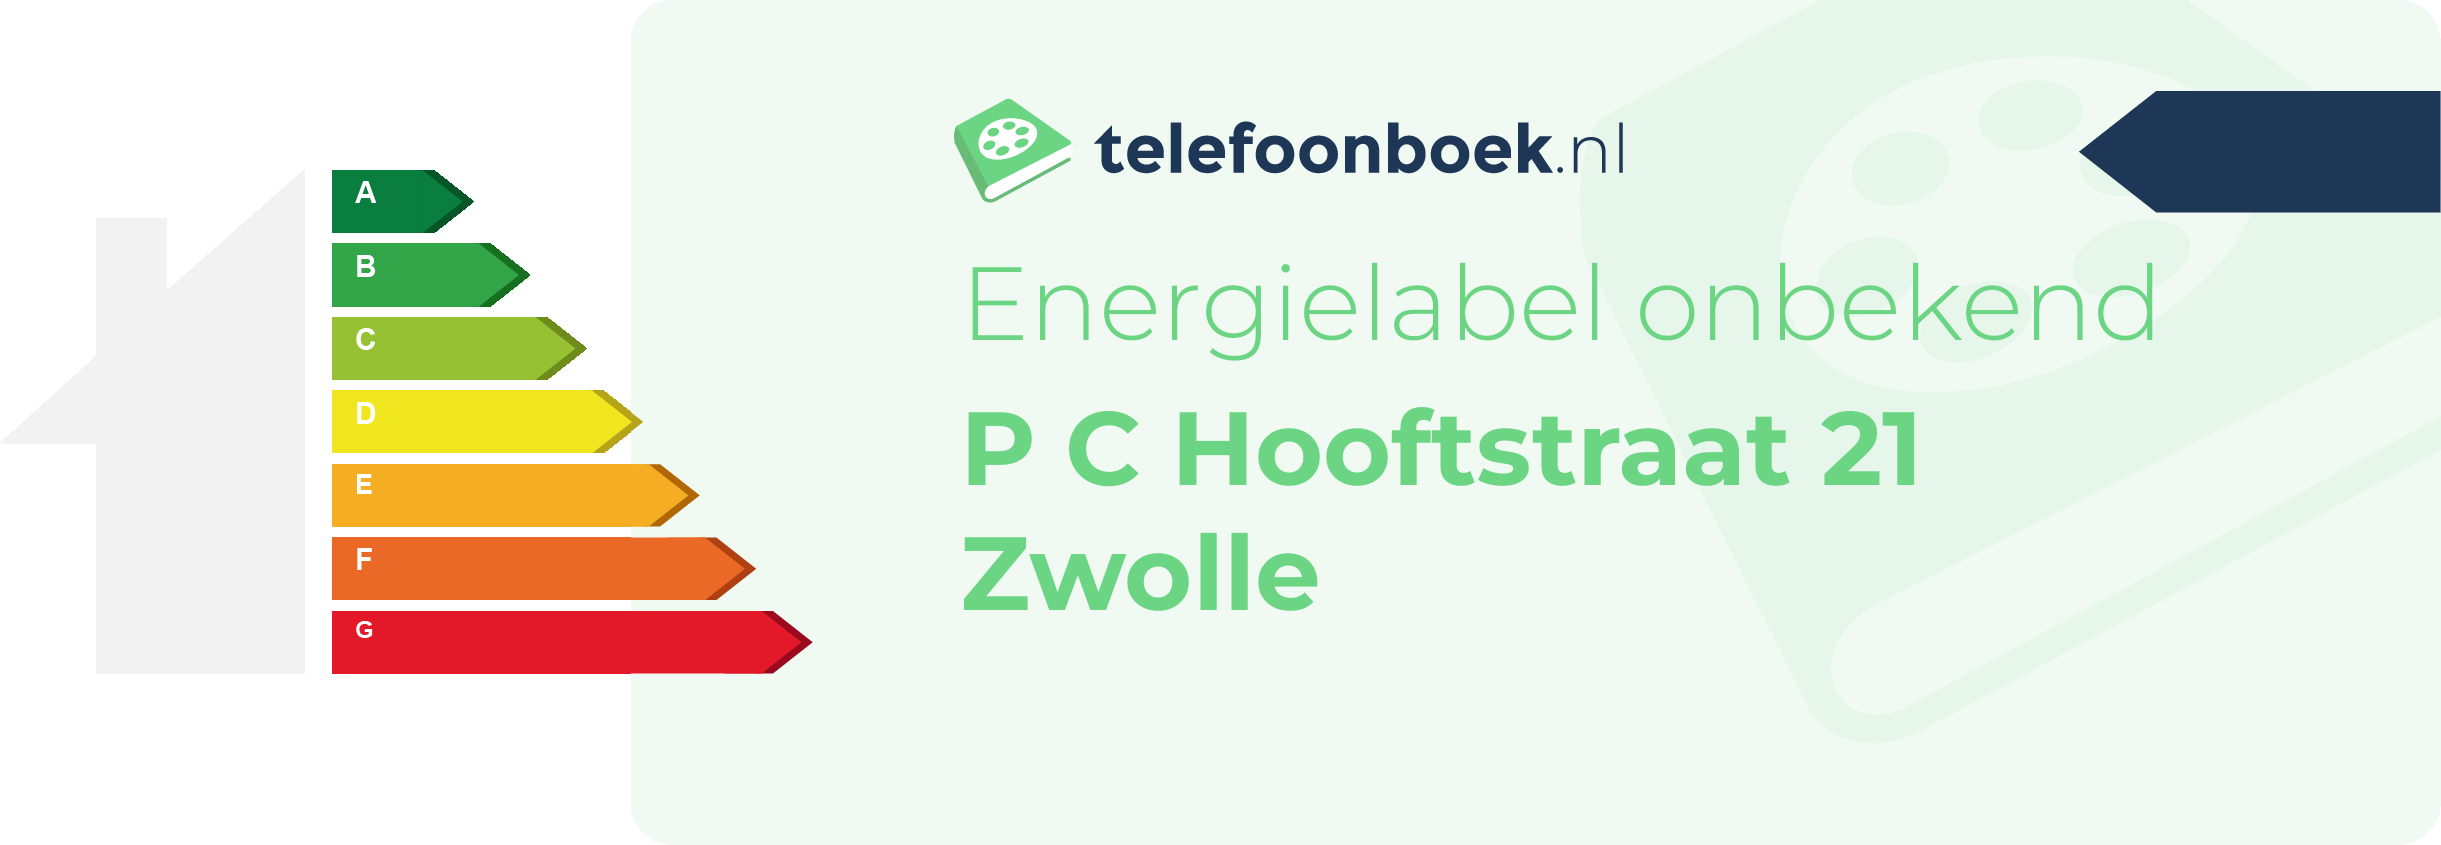 Energielabel P C Hooftstraat 21 Zwolle